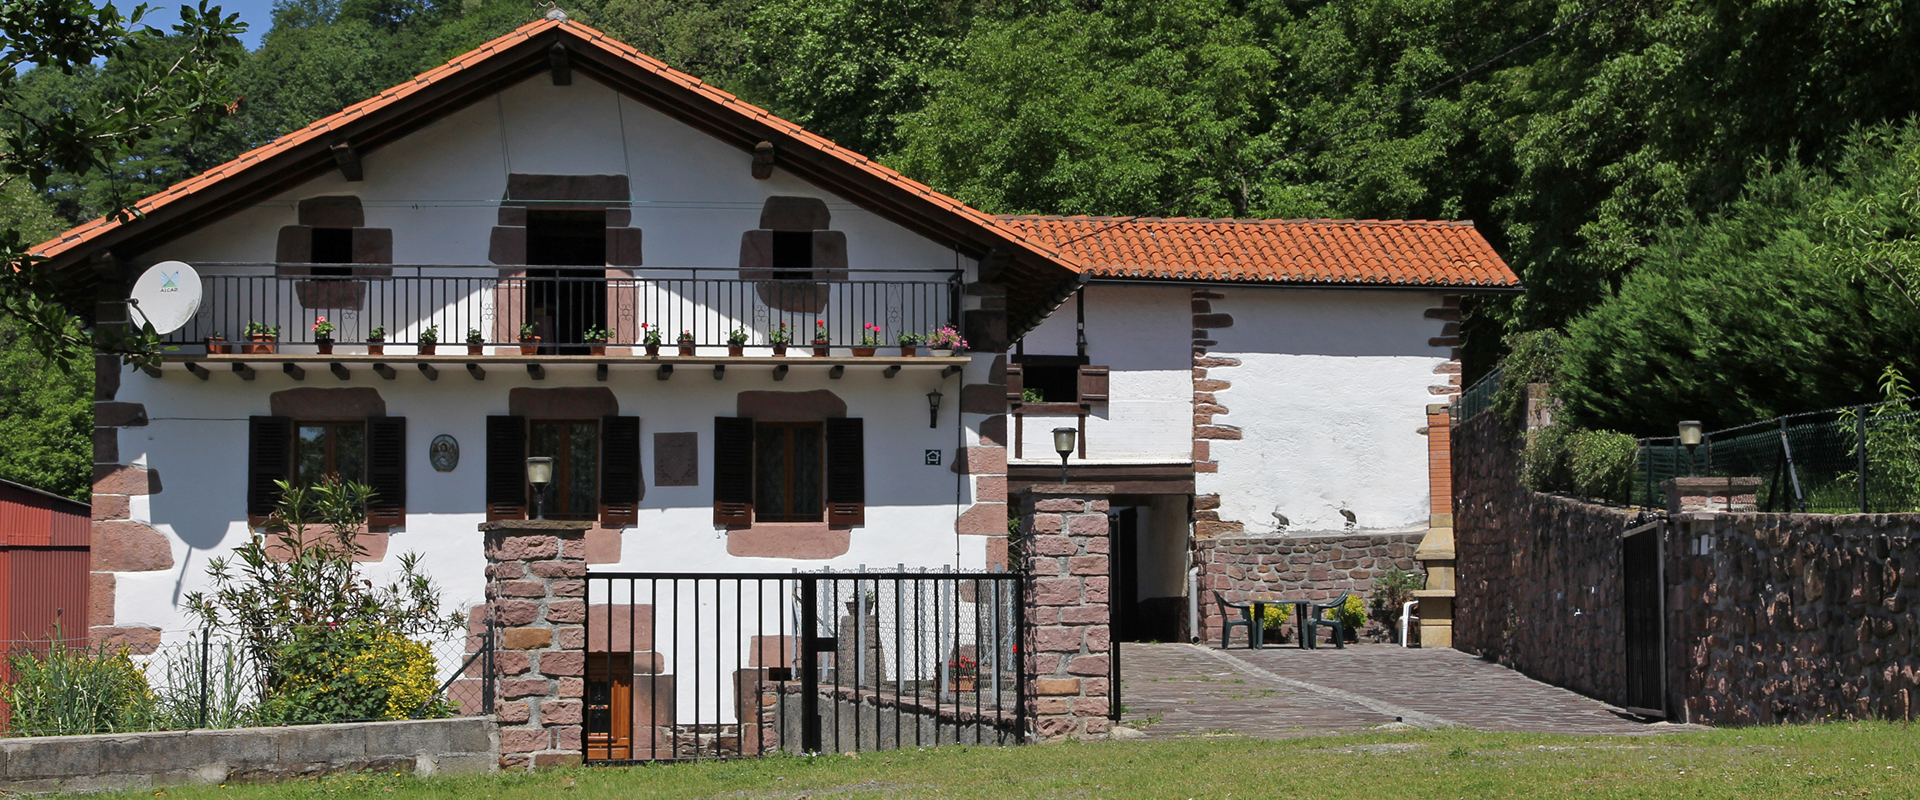 Casa rural Seorenea en Arraioz, Baztan